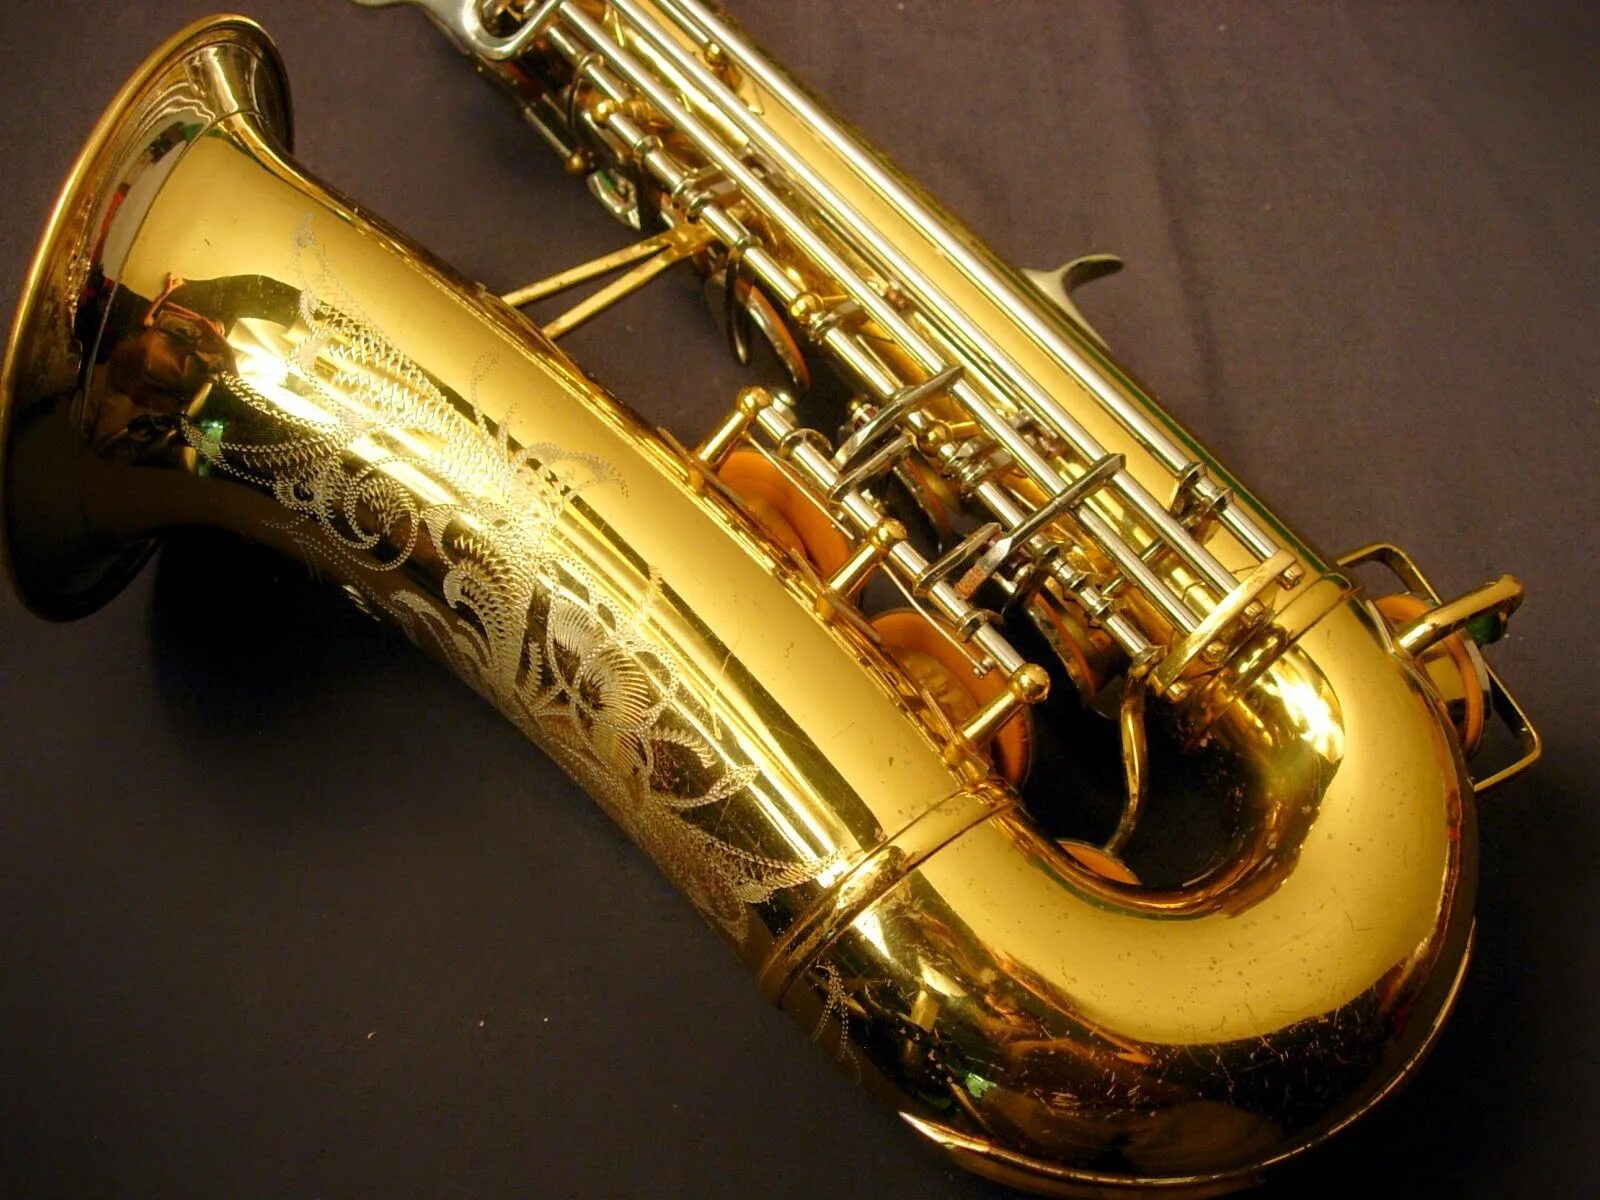 Без остановки слушать саксофон. Саксофон. Желтый саксофон. Саксофон деревянный духовой музыкальный инструмент. Мелодия для саксофона.